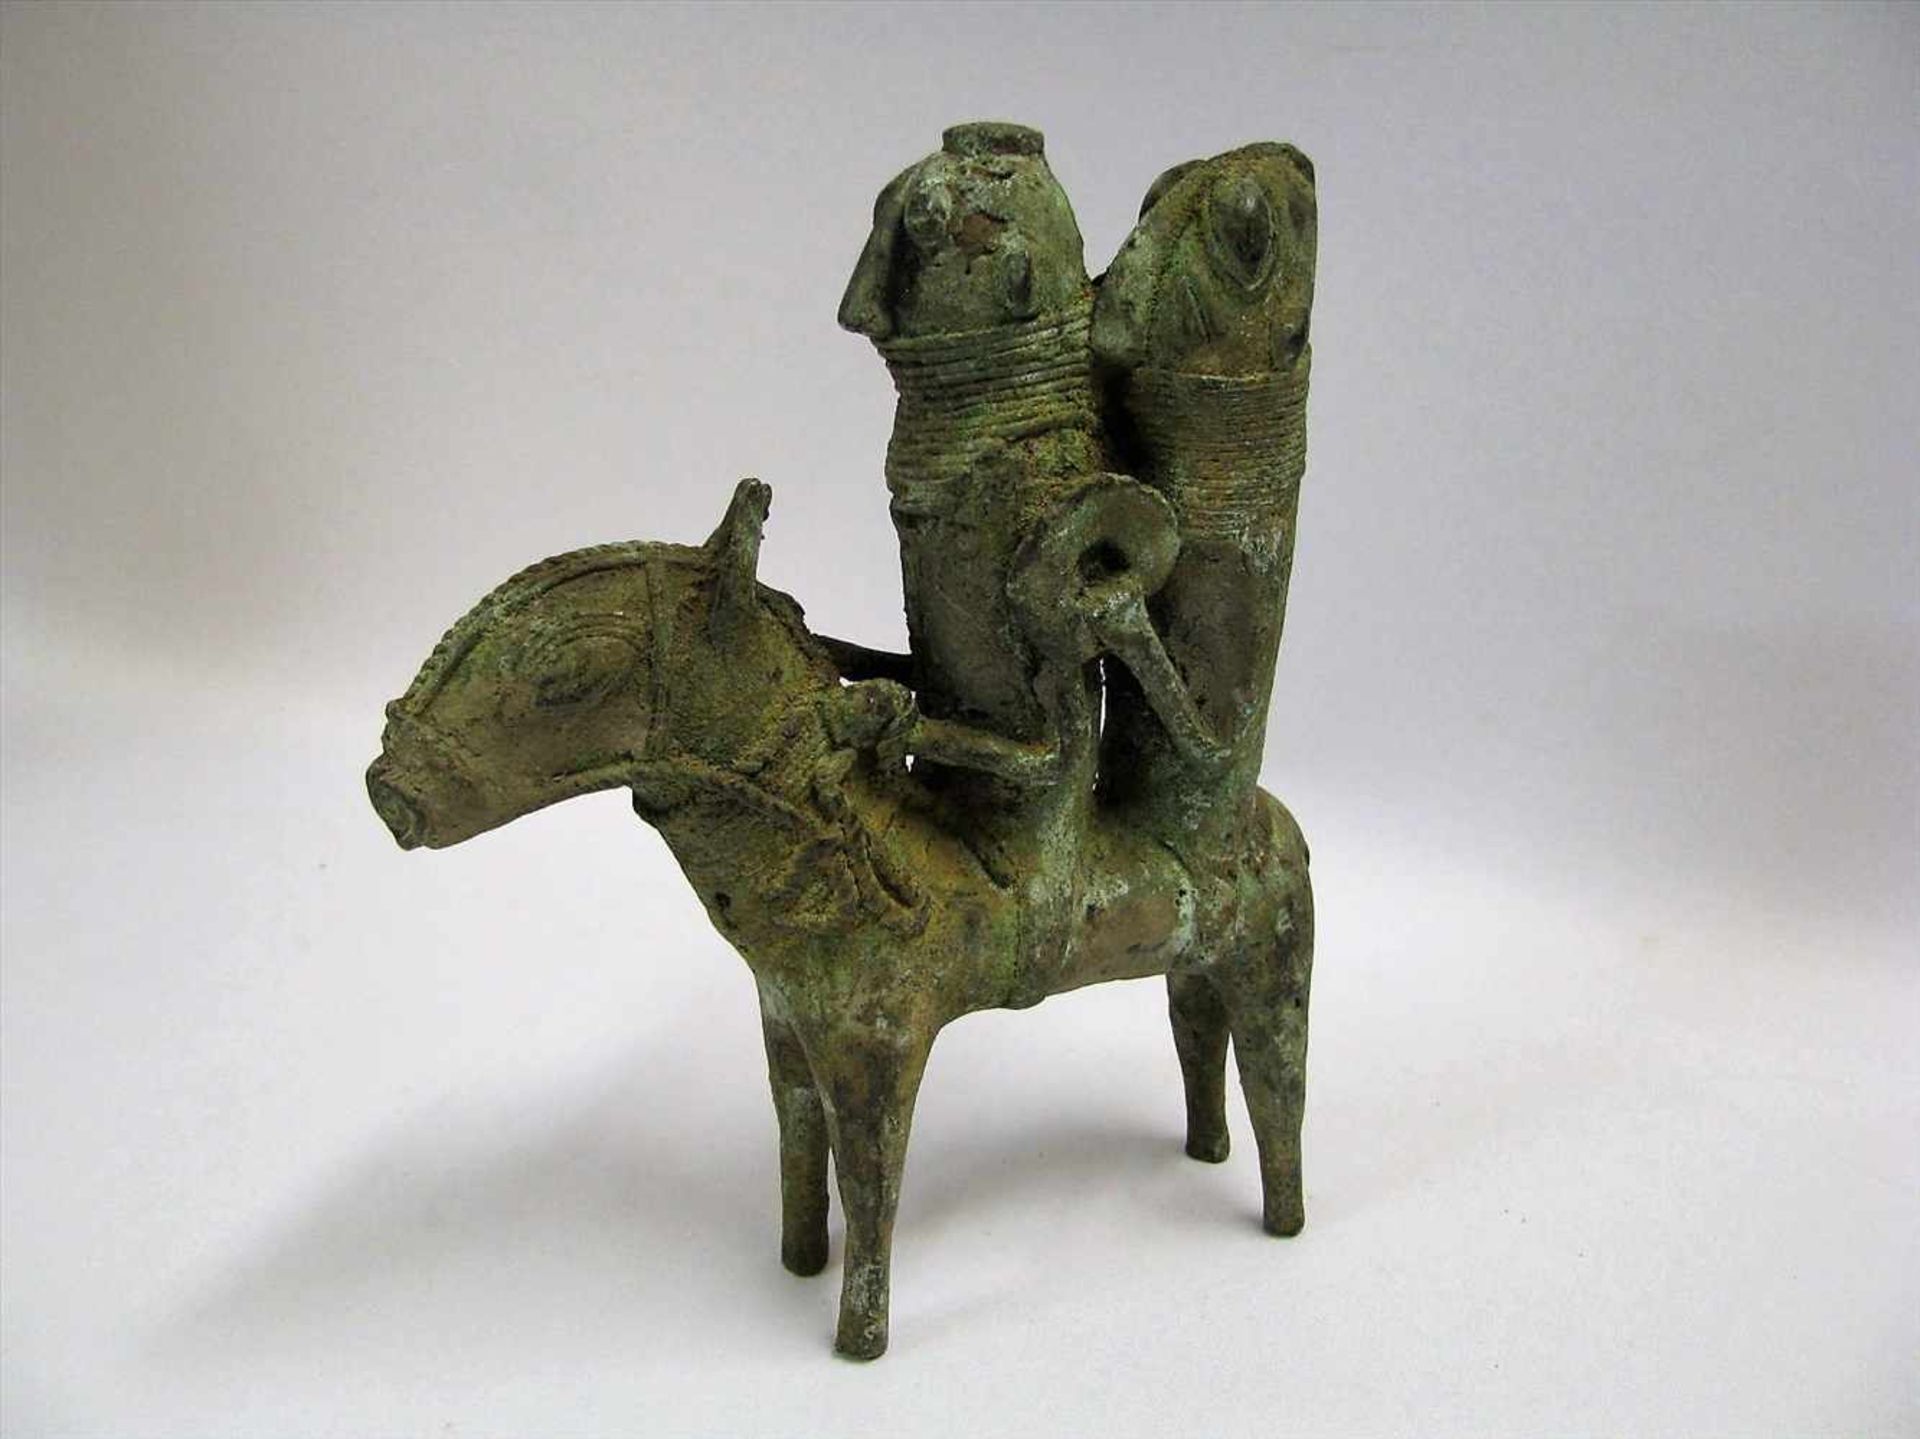 Zwei Reiter auf Esel, Afrika, Benin, Bronze oxidiert, 19 x 16 x 4,5 cm.